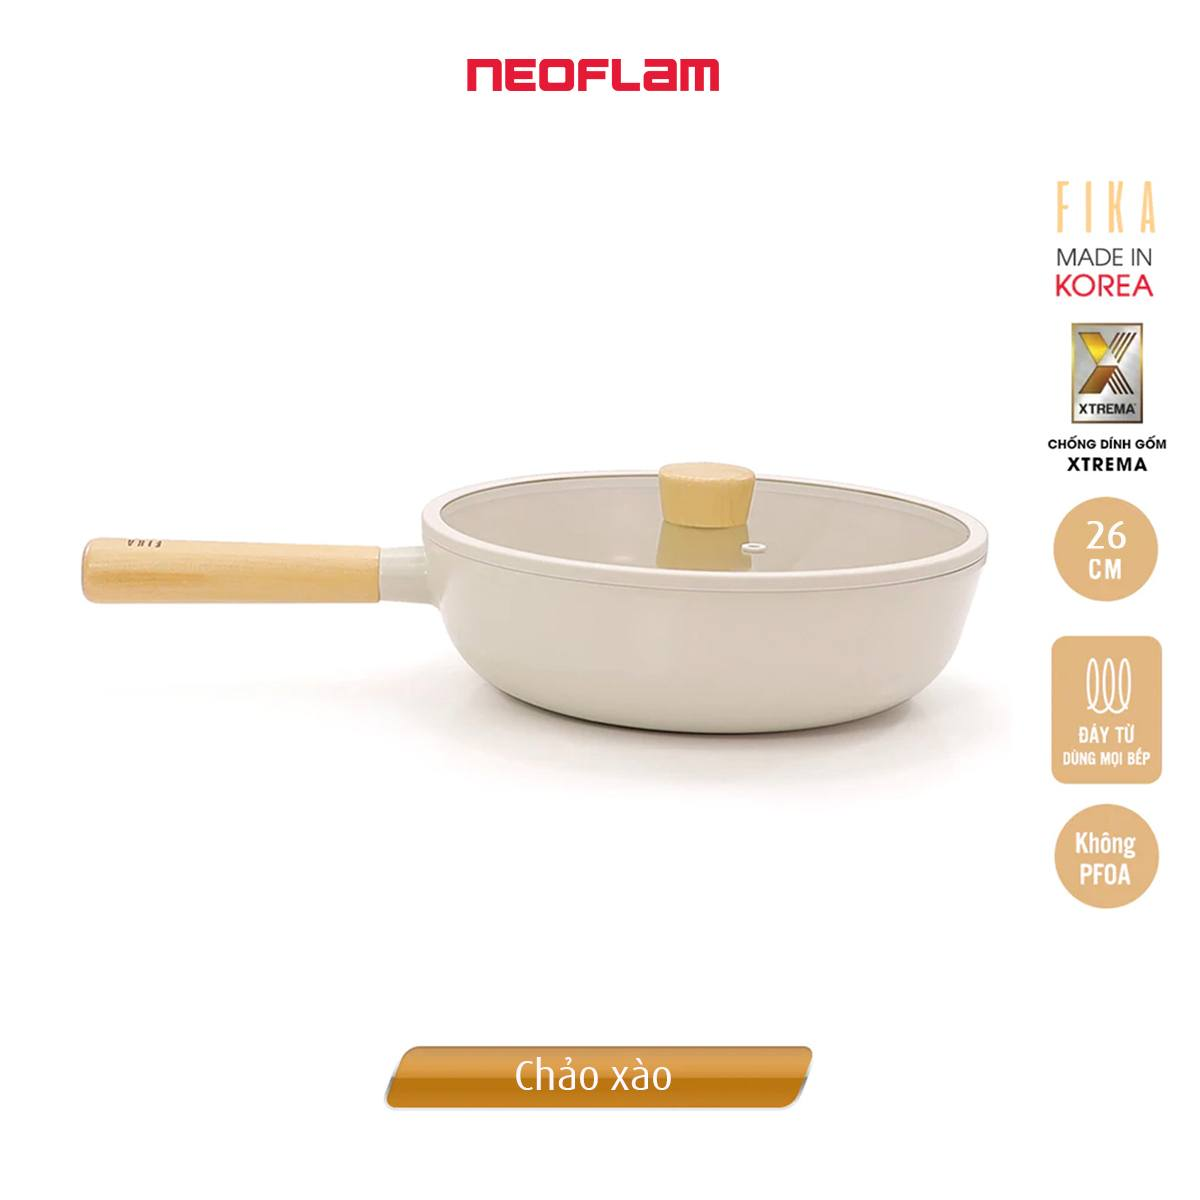 Bộ nồi chảo Neoflam Fika 5 món. Made in Korea. Hàng có sẵn, giao ngay